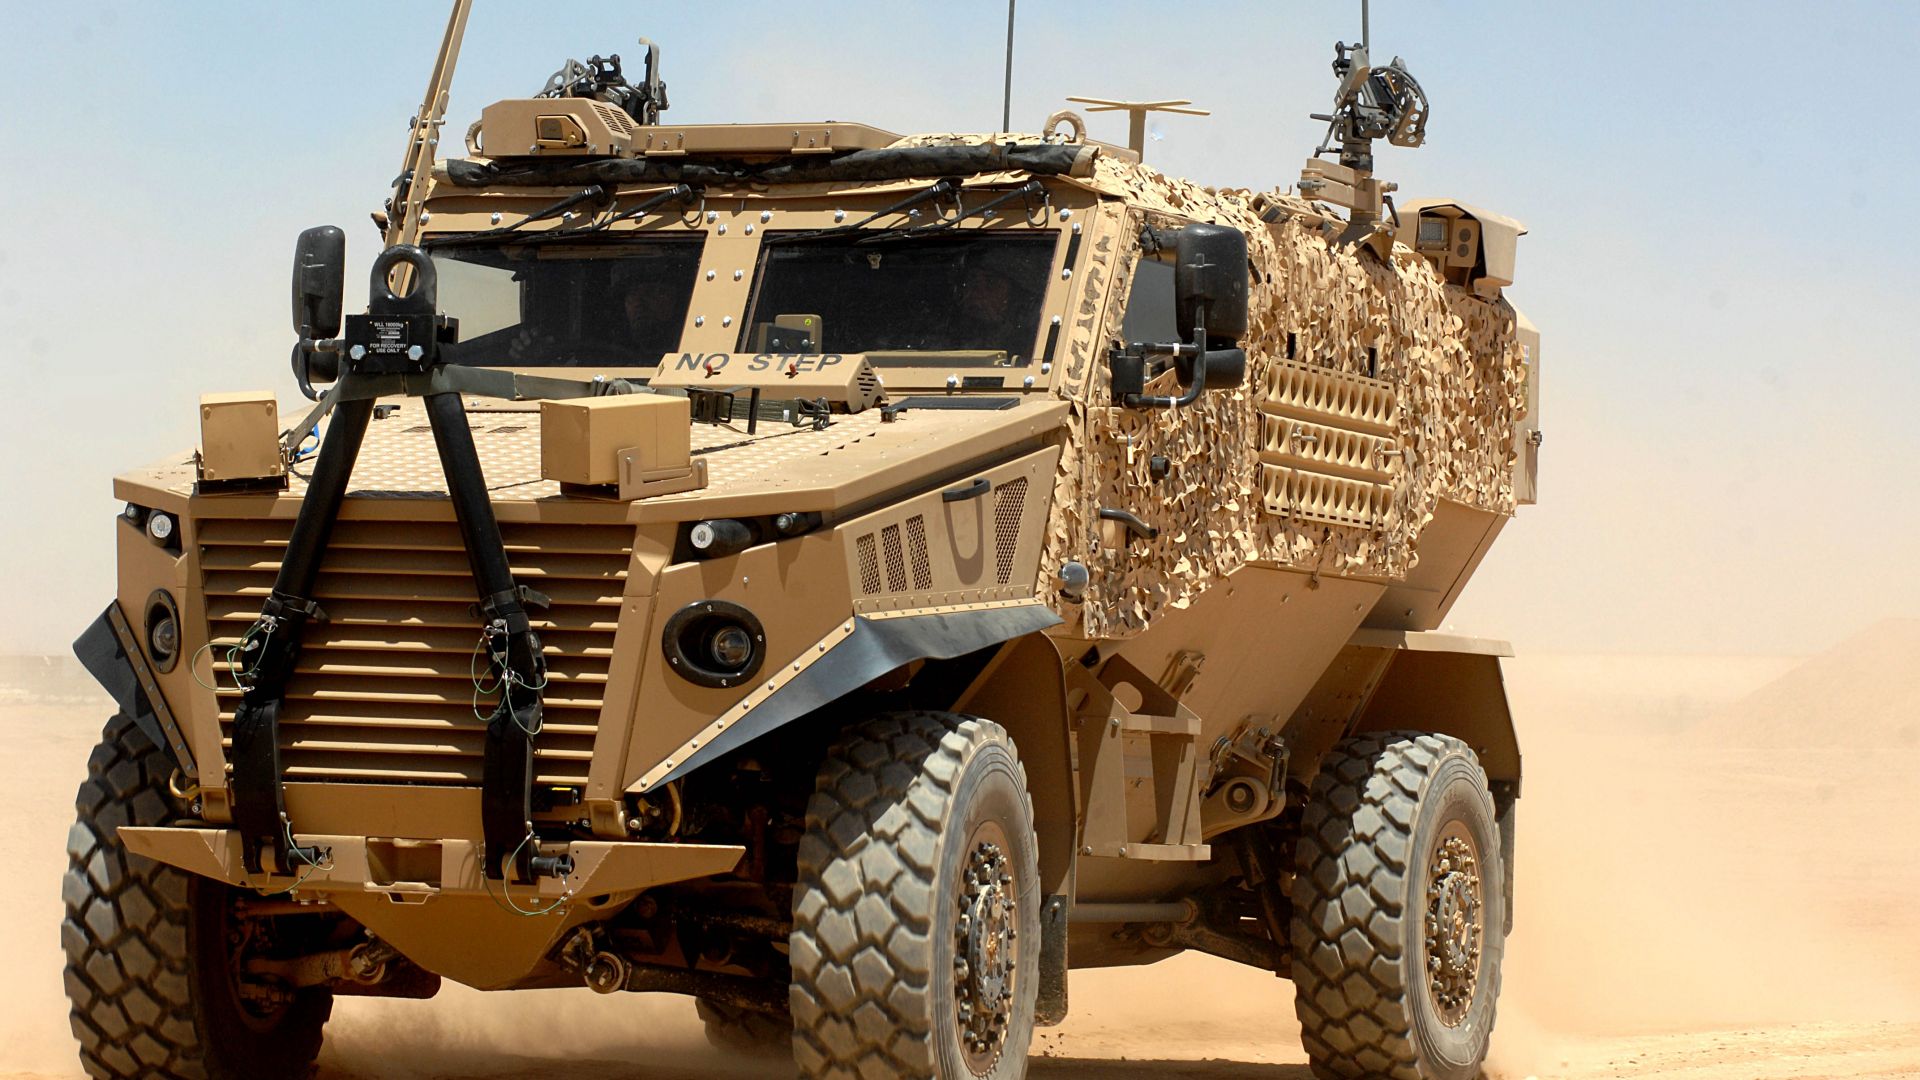 Форс Протекшн Оцелот, броневик, Армия Британии, Force Protection Ocelot, Armored car, British Army (horizontal)